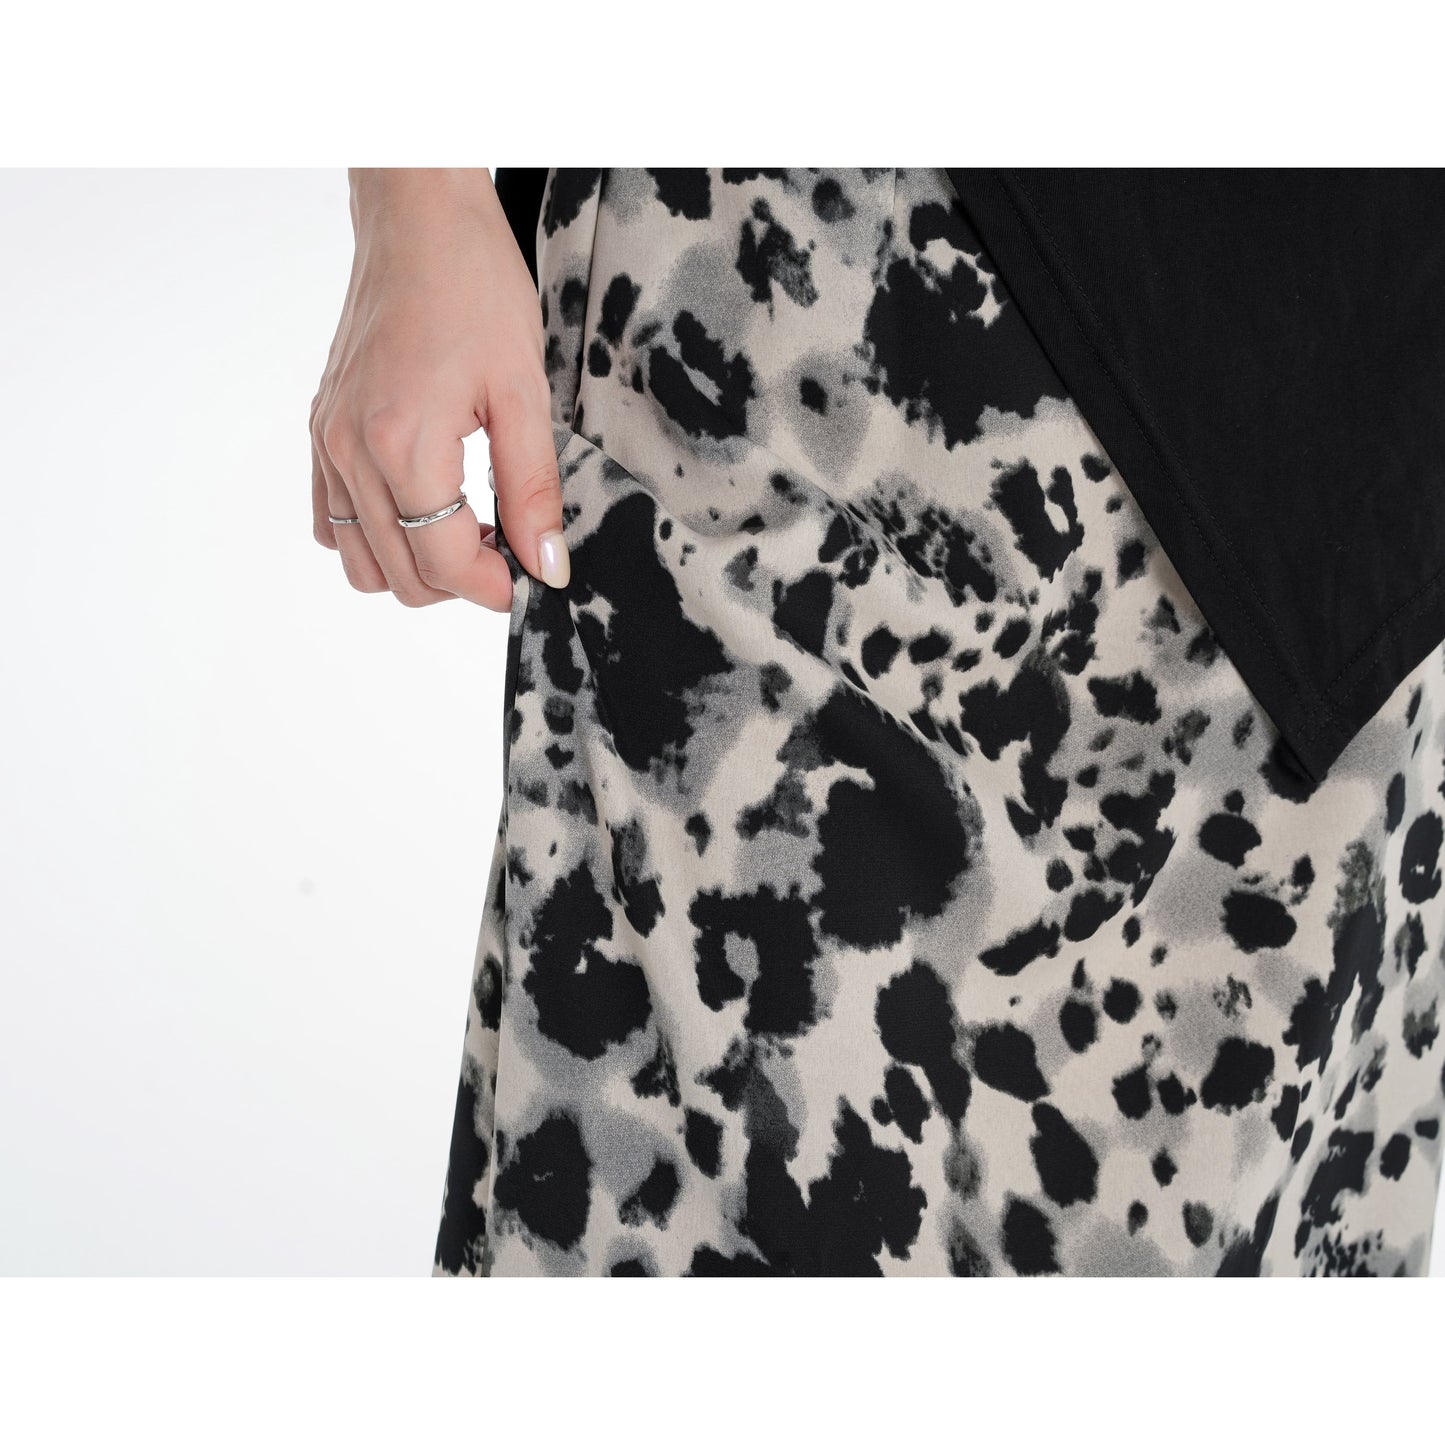 Falda de malla estampada de leopardo con cintura elástica y abertura dividida, de talle ajustado